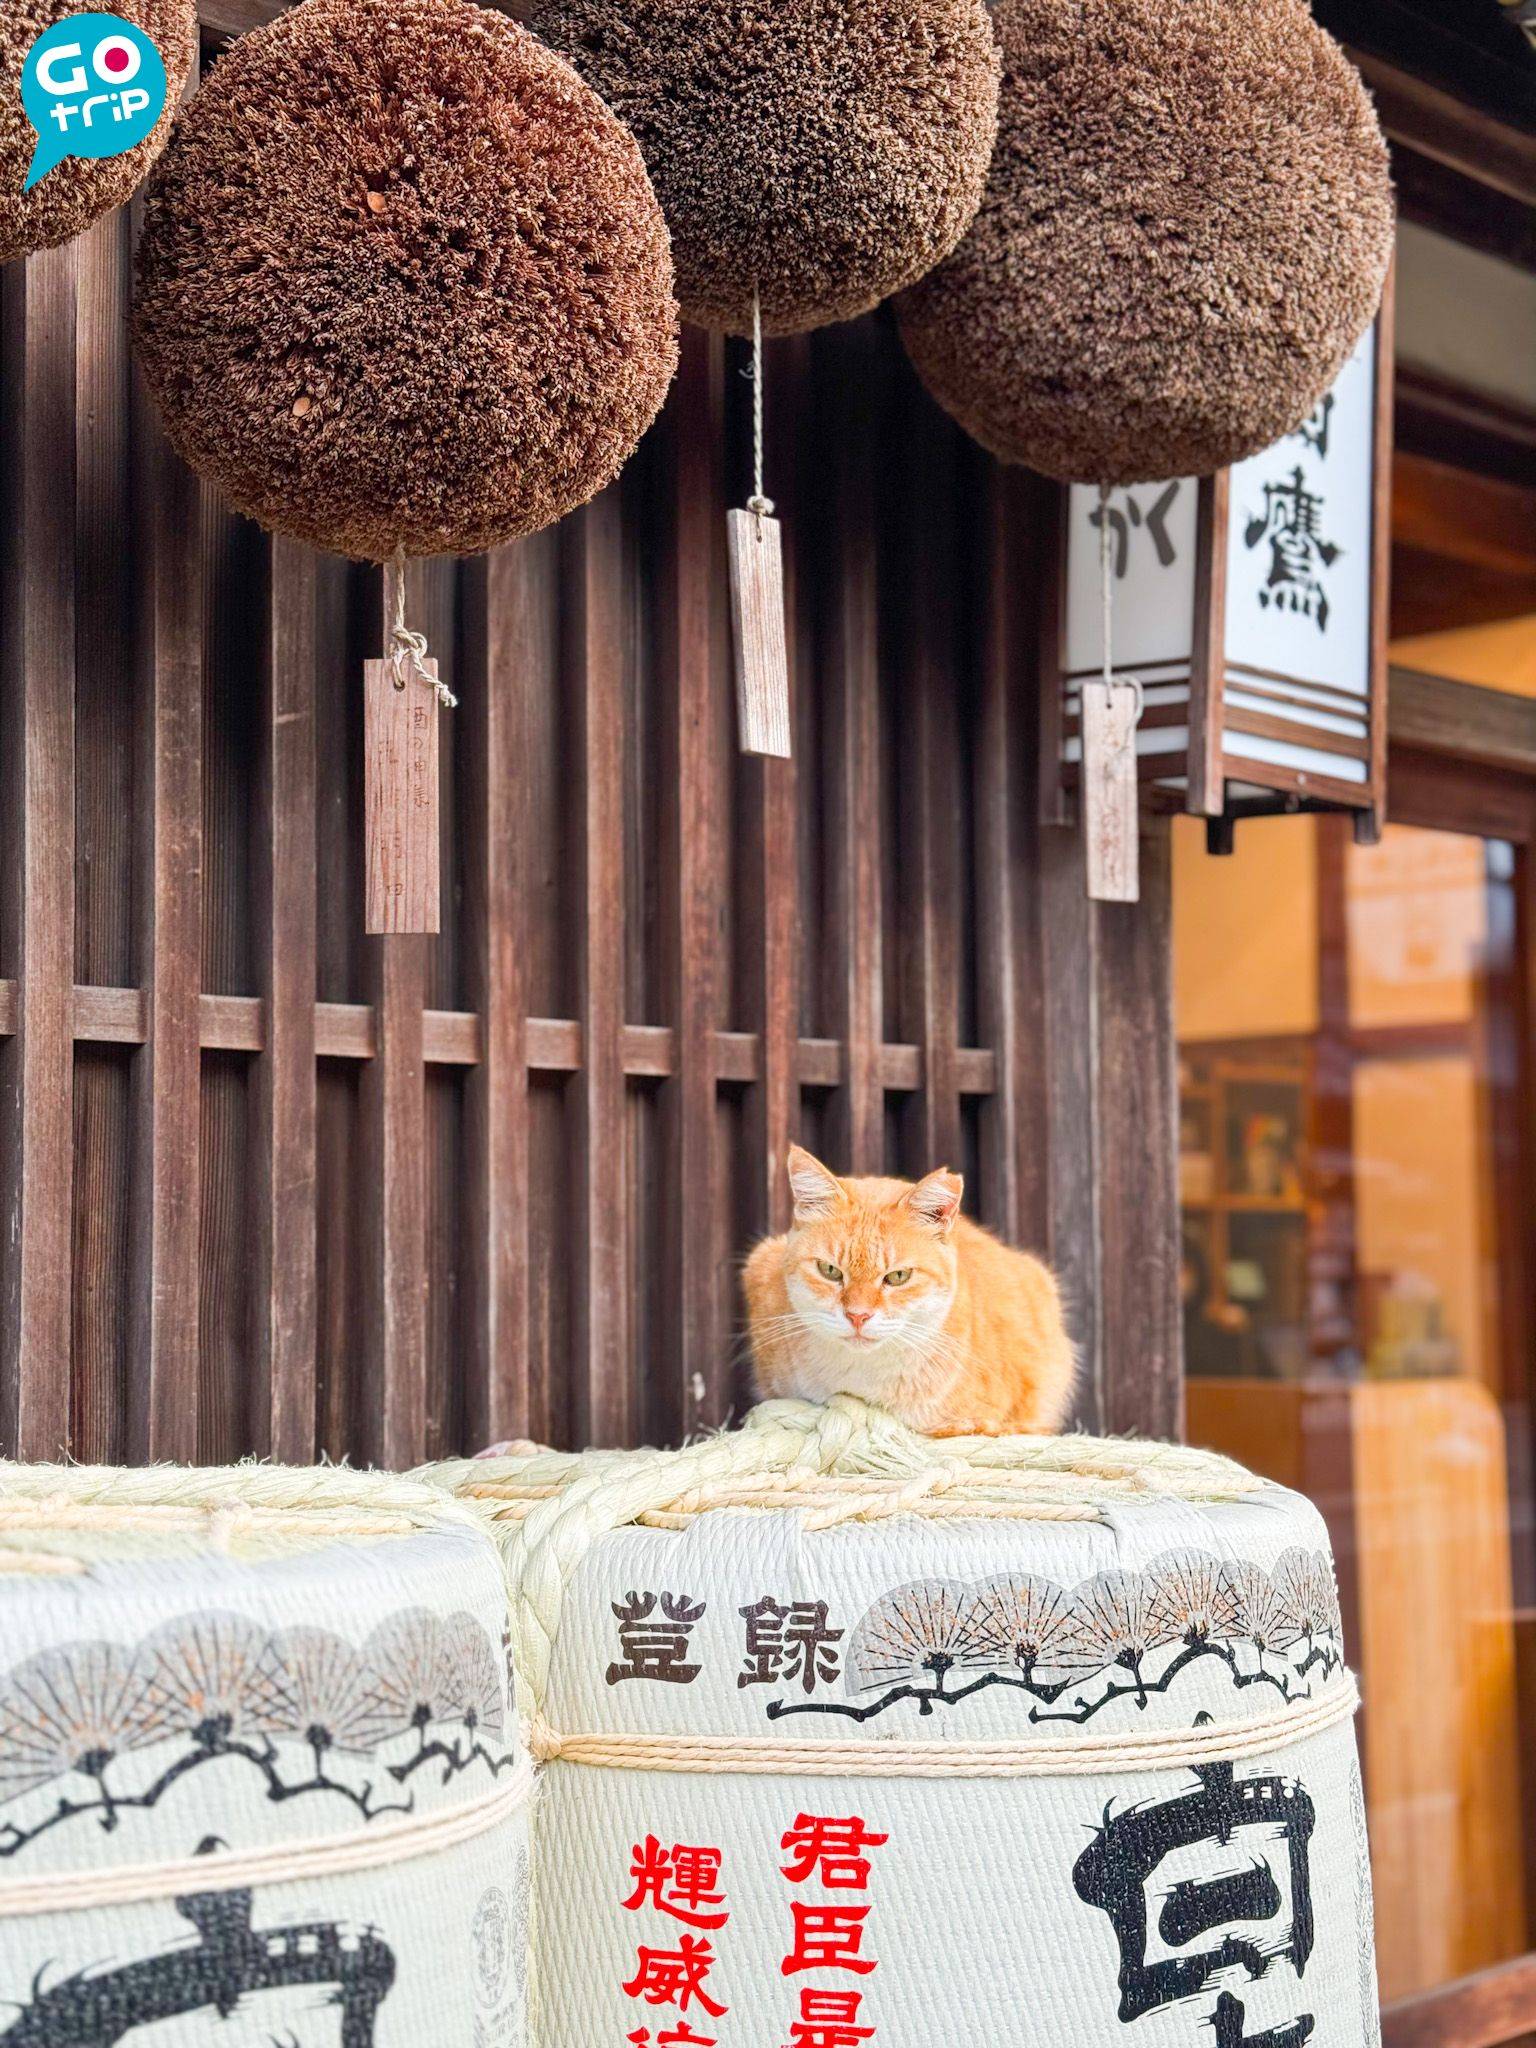 名古屋自由行 厄除町和托福橫丁有不少貓貓。